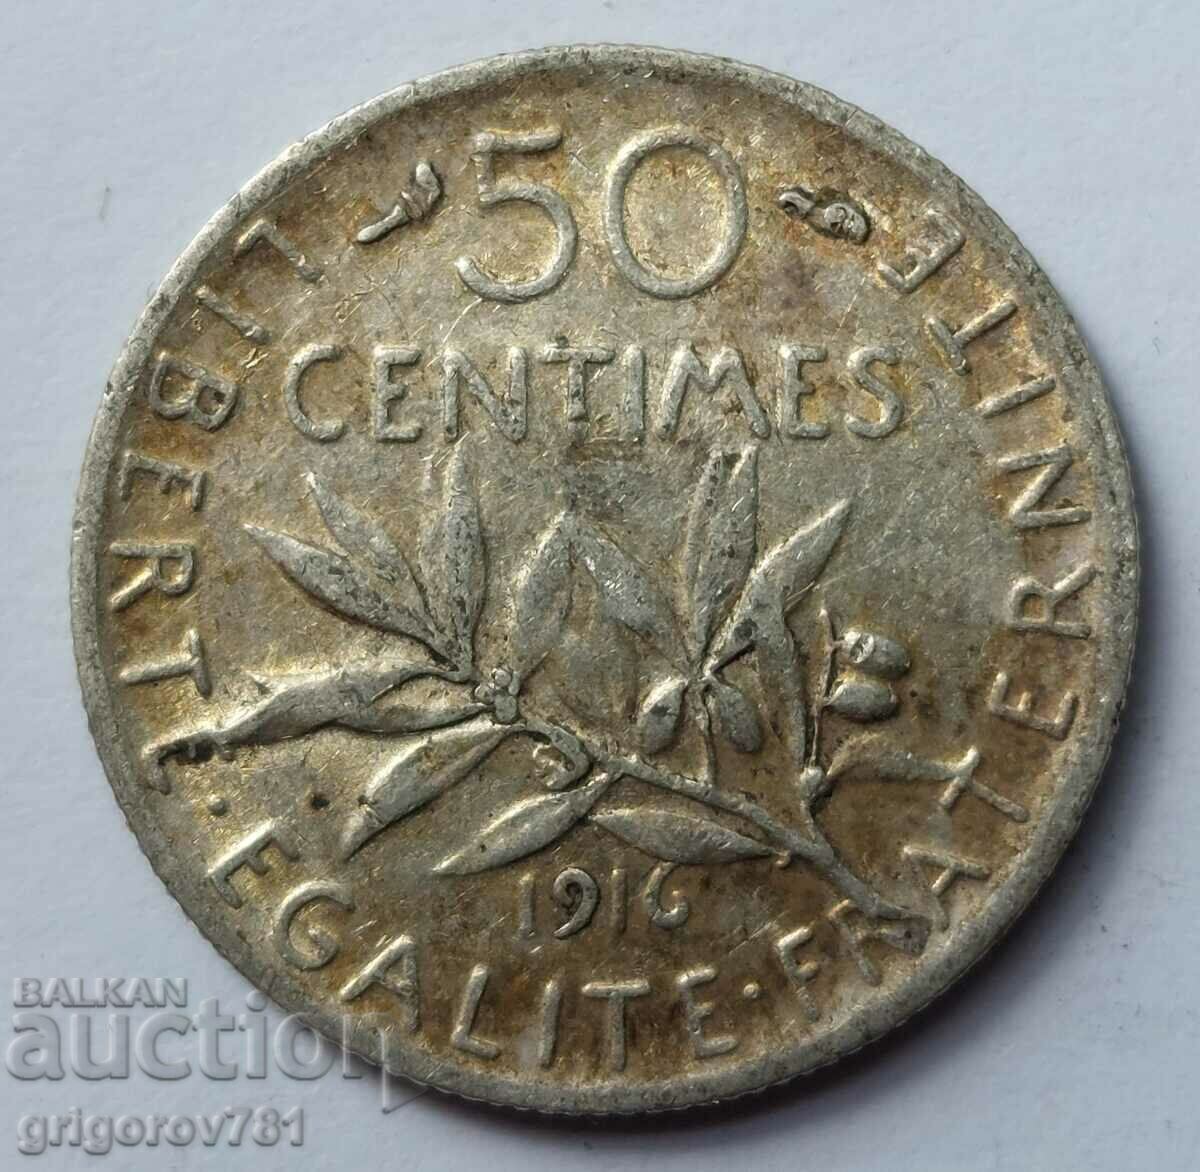 Ασημένιο 50 εκατοστά Γαλλία 1916 - ασημένιο νόμισμα №8